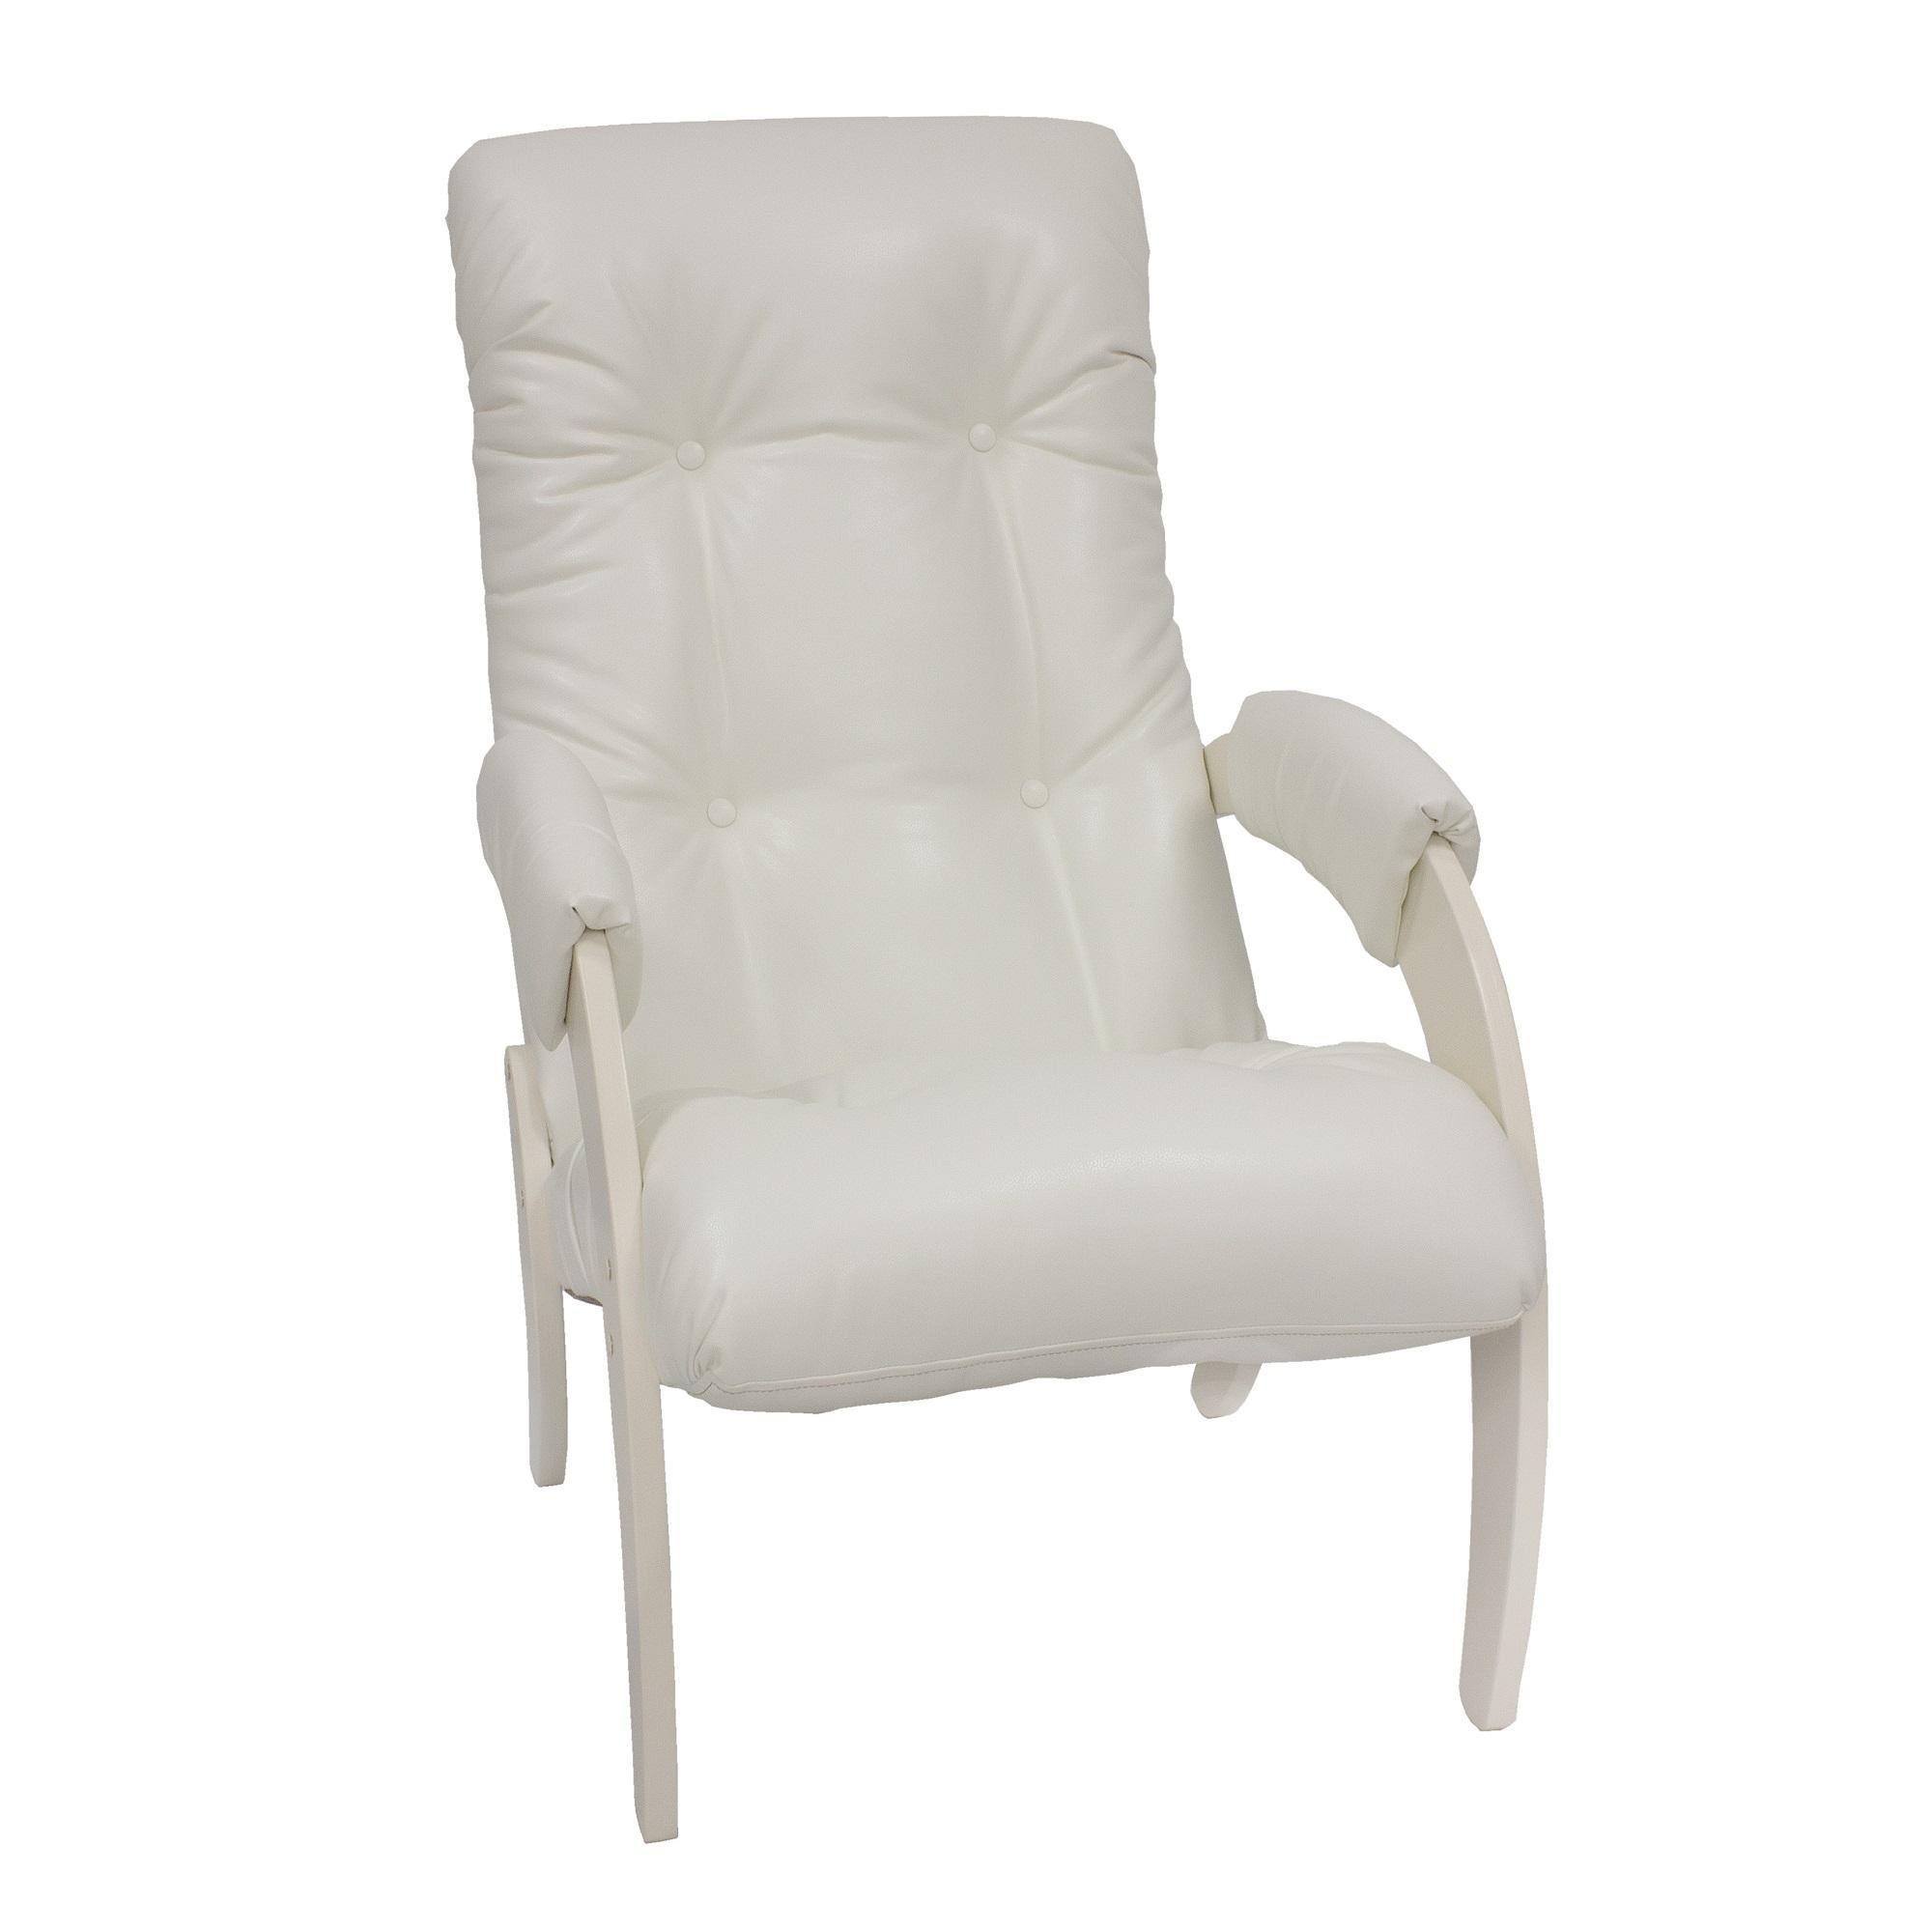 Кресло для отдыха malta комфорт белый 60x94x88 см.